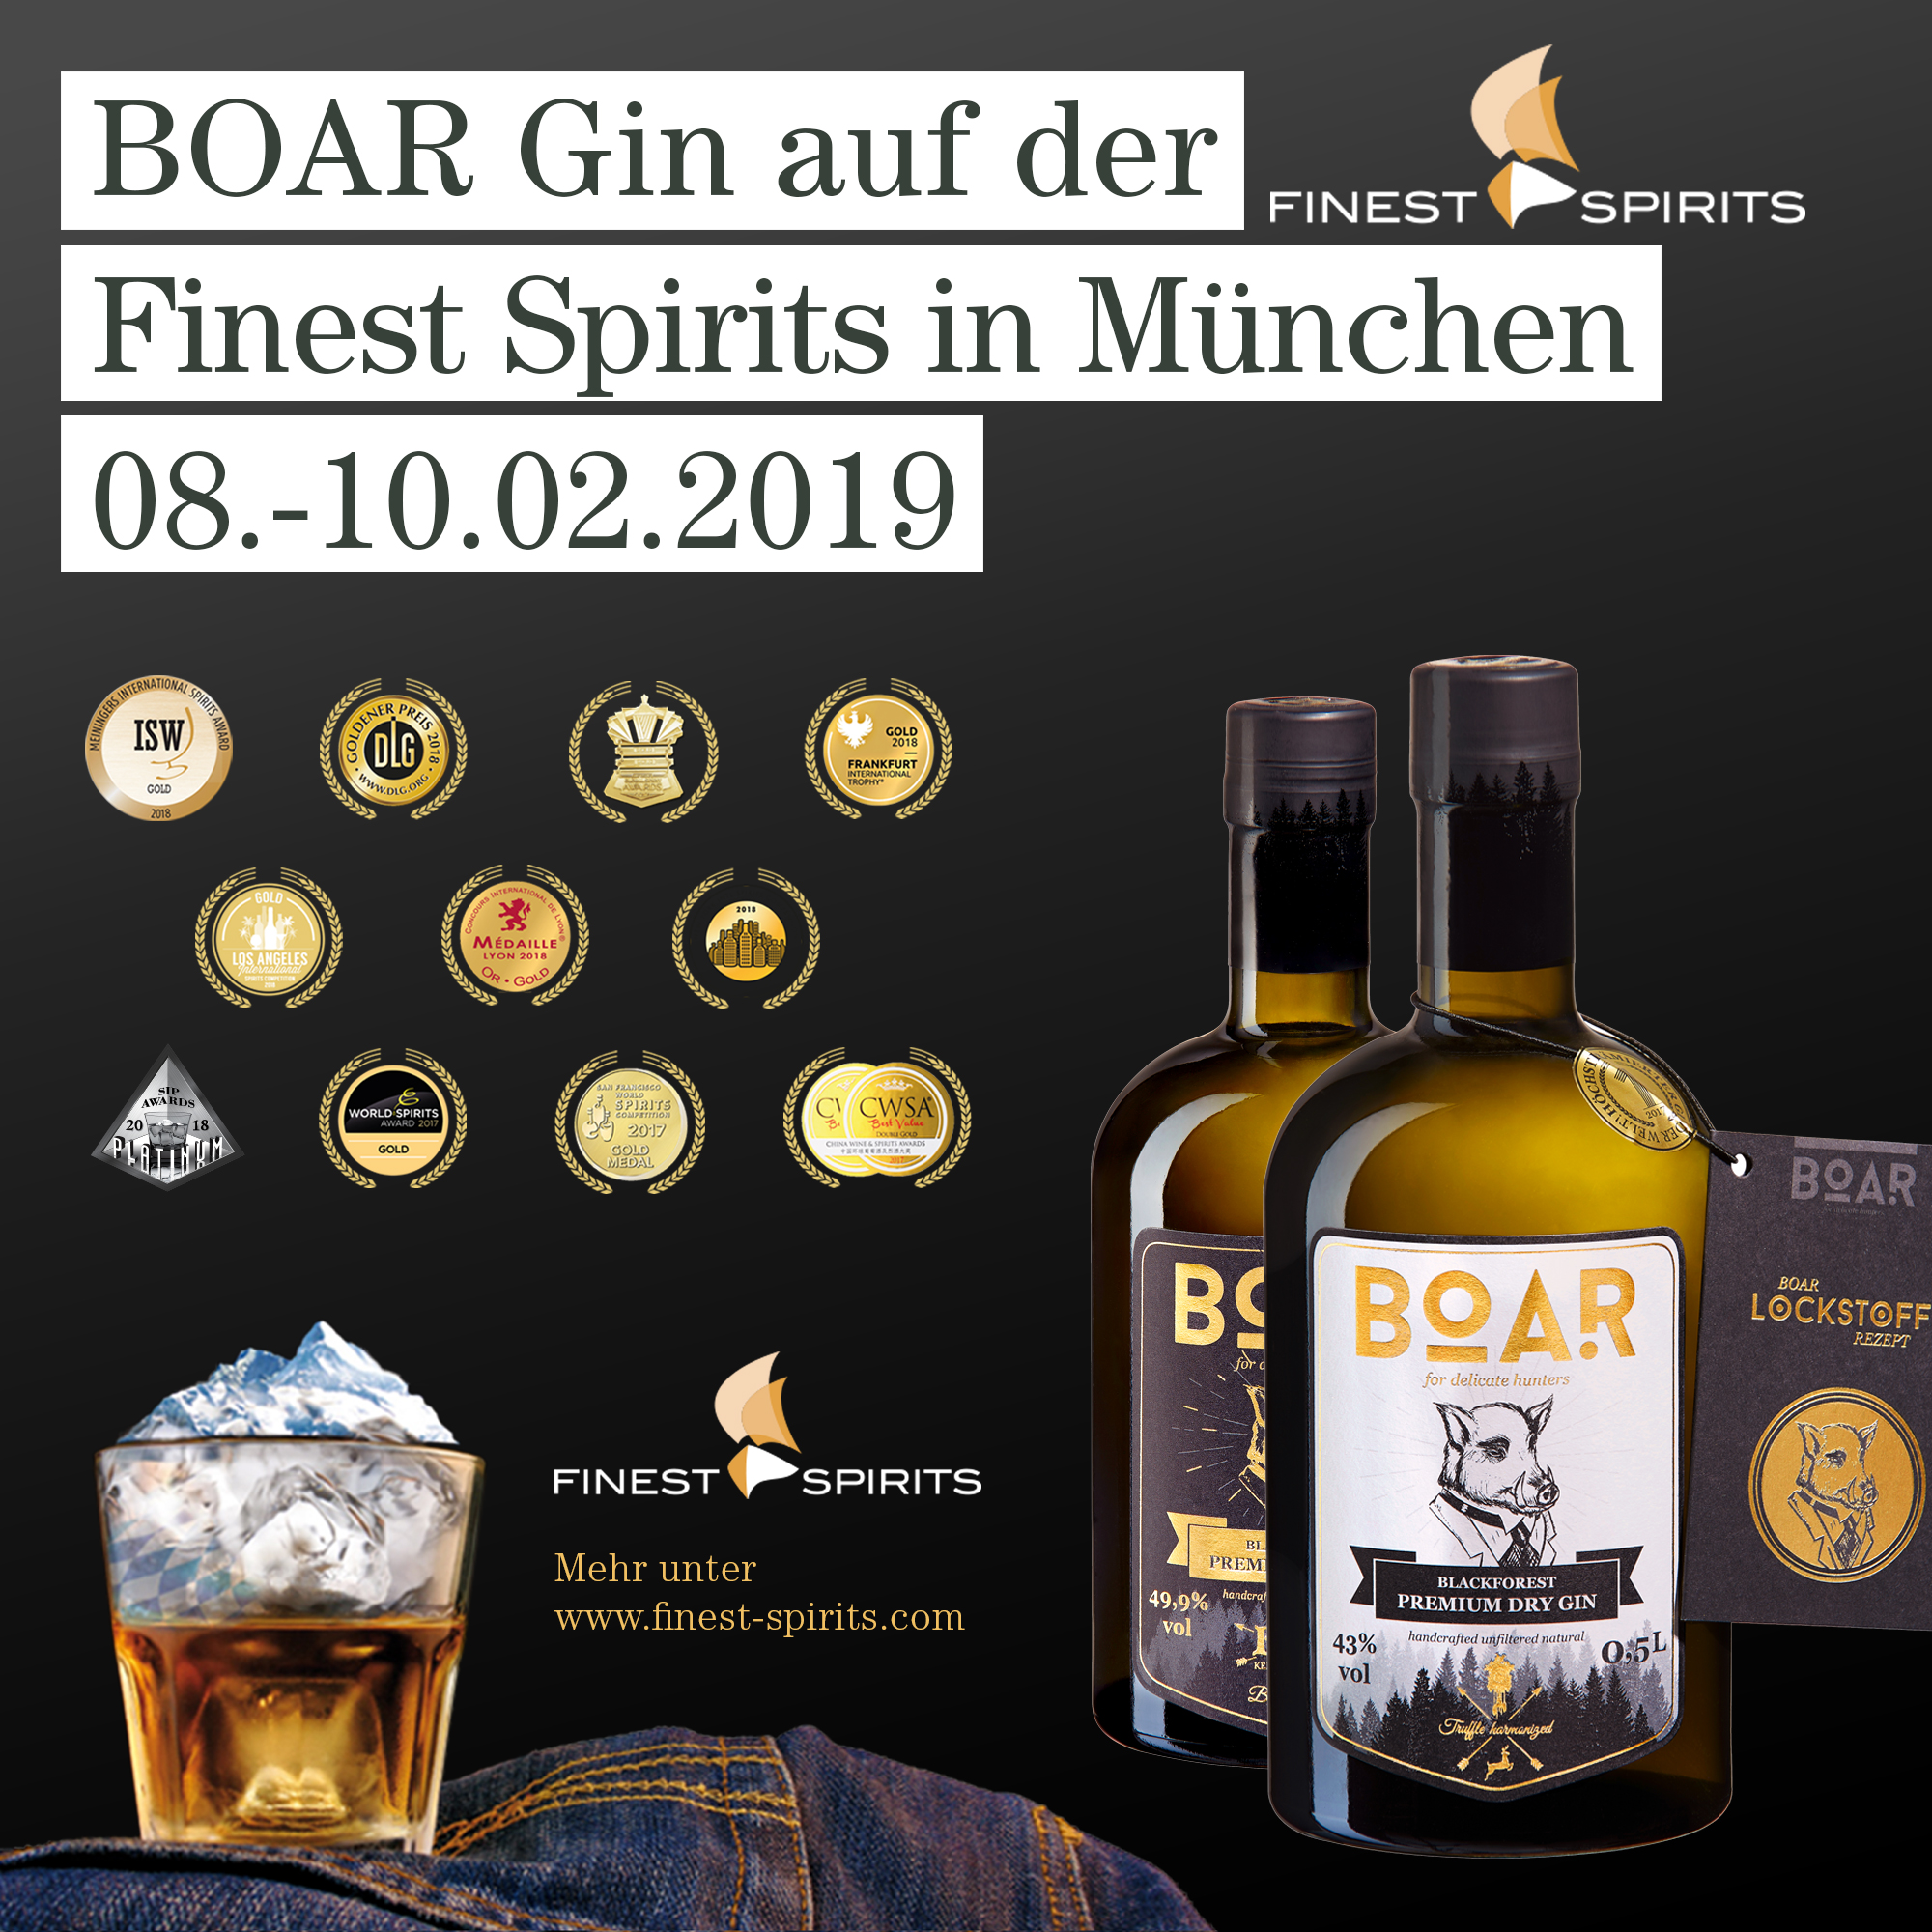 BOAR Gin auf der Finest Spirits in München vom 08.-10.02.2019